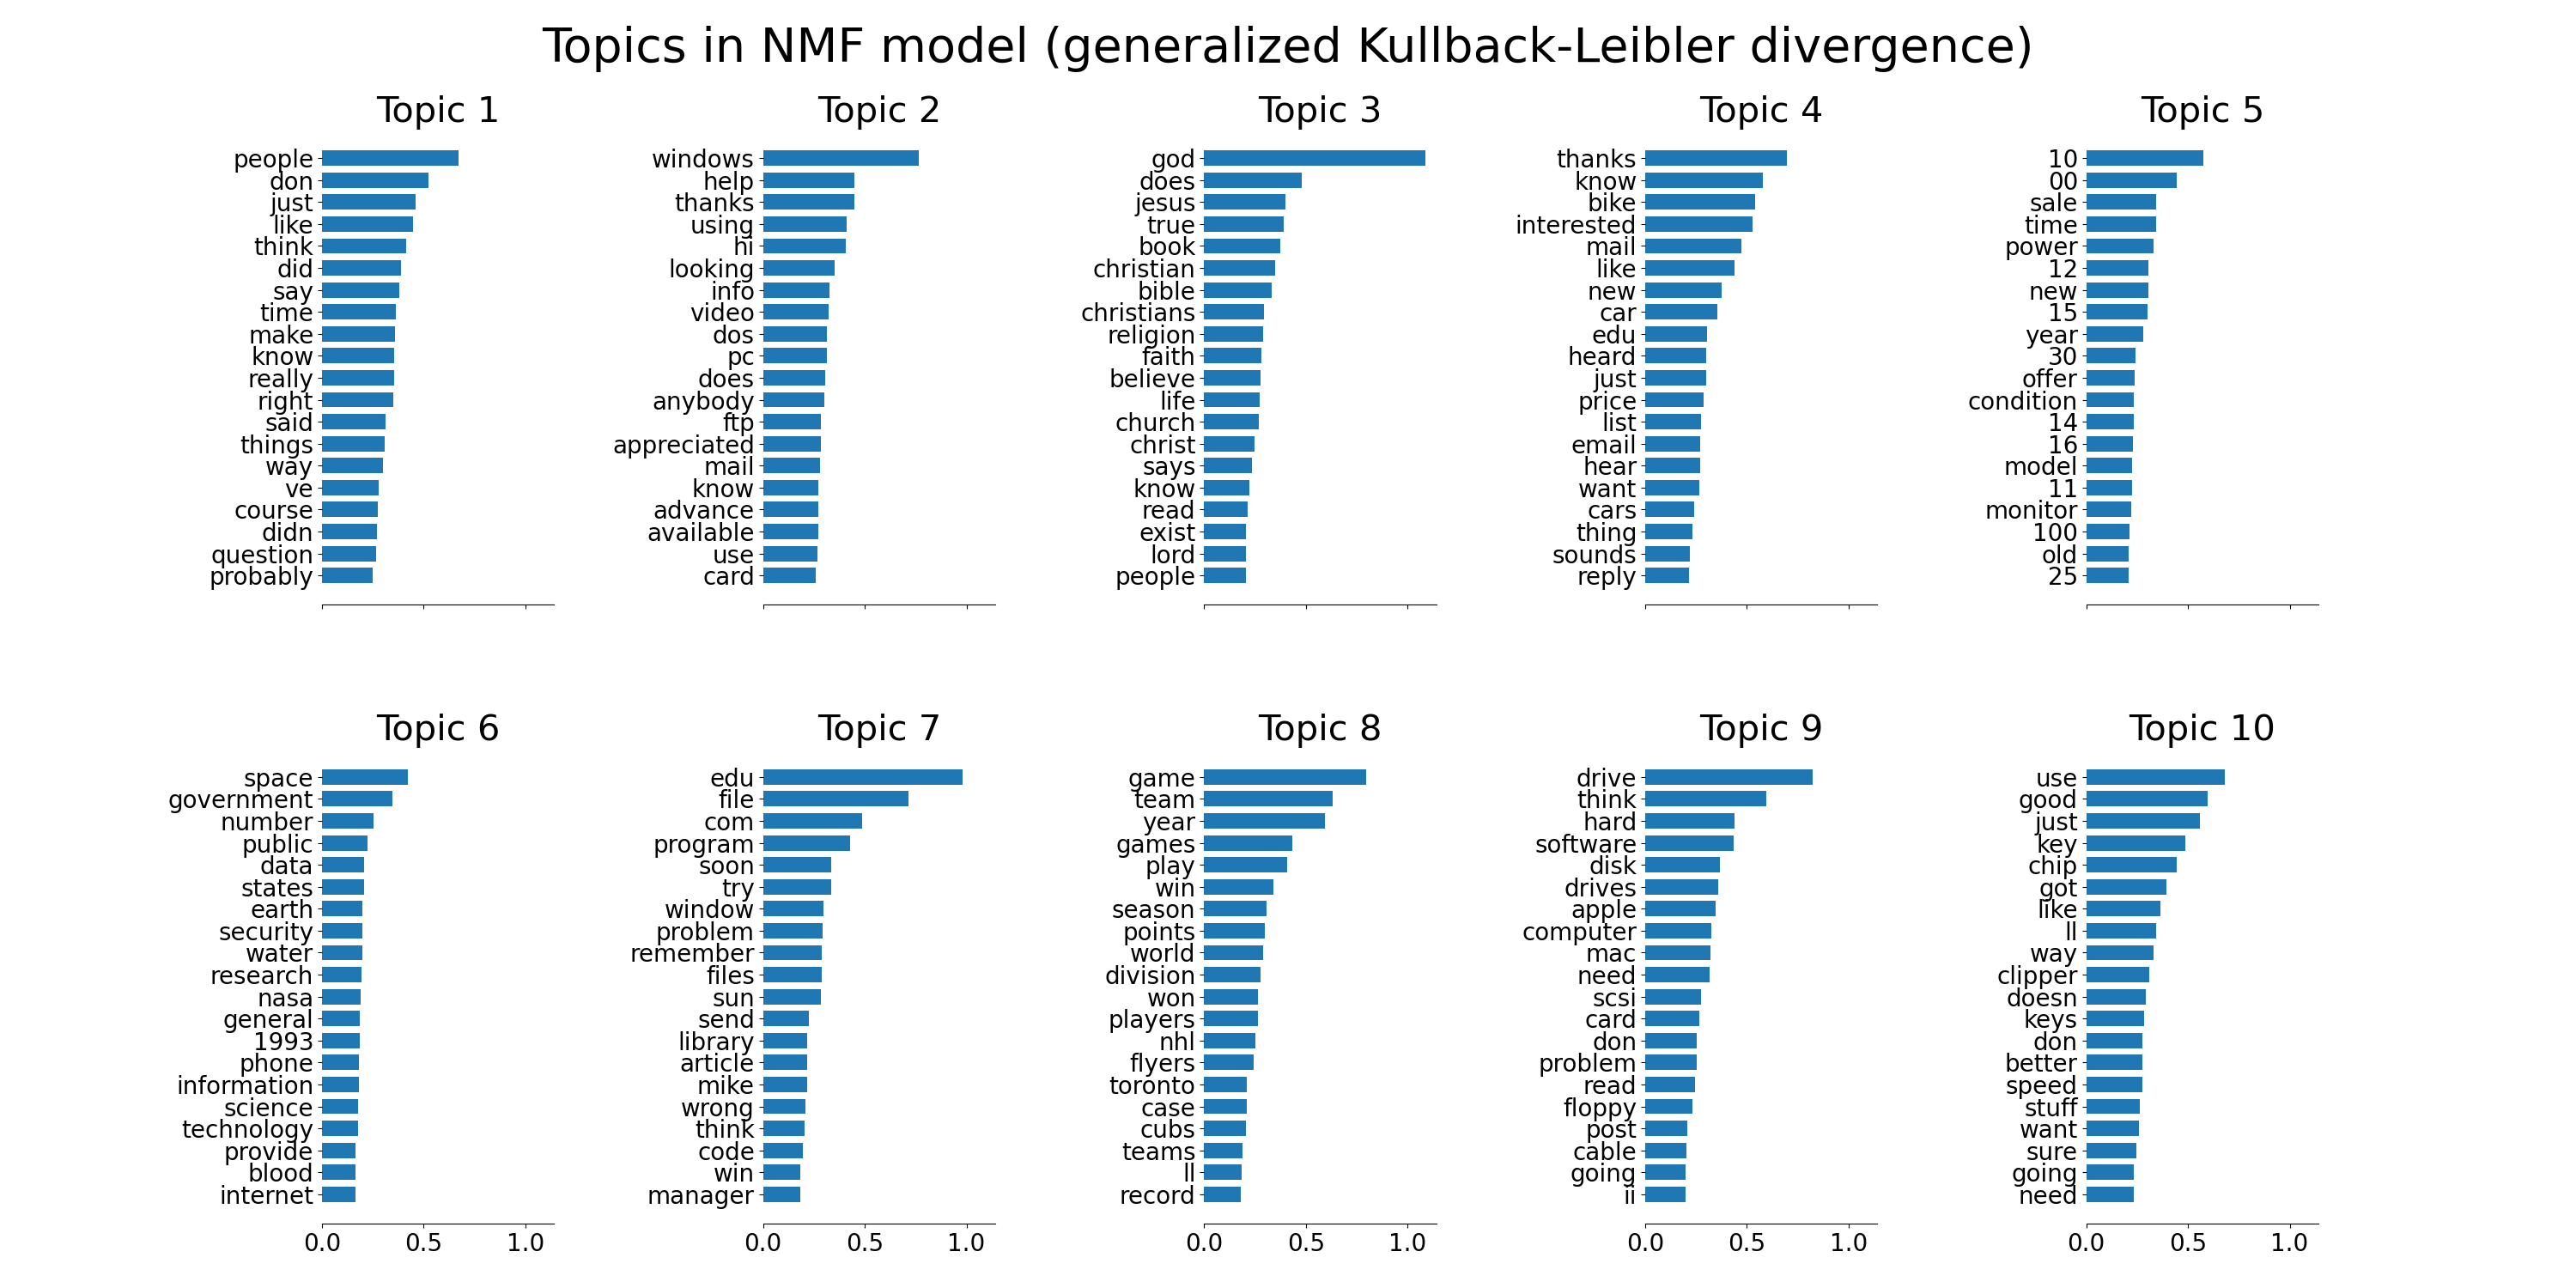 Topics in NMF model (generalized Kullback-Leibler divergence), Topic 1, Topic 2, Topic 3, Topic 4, Topic 5, Topic 6, Topic 7, Topic 8, Topic 9, Topic 10